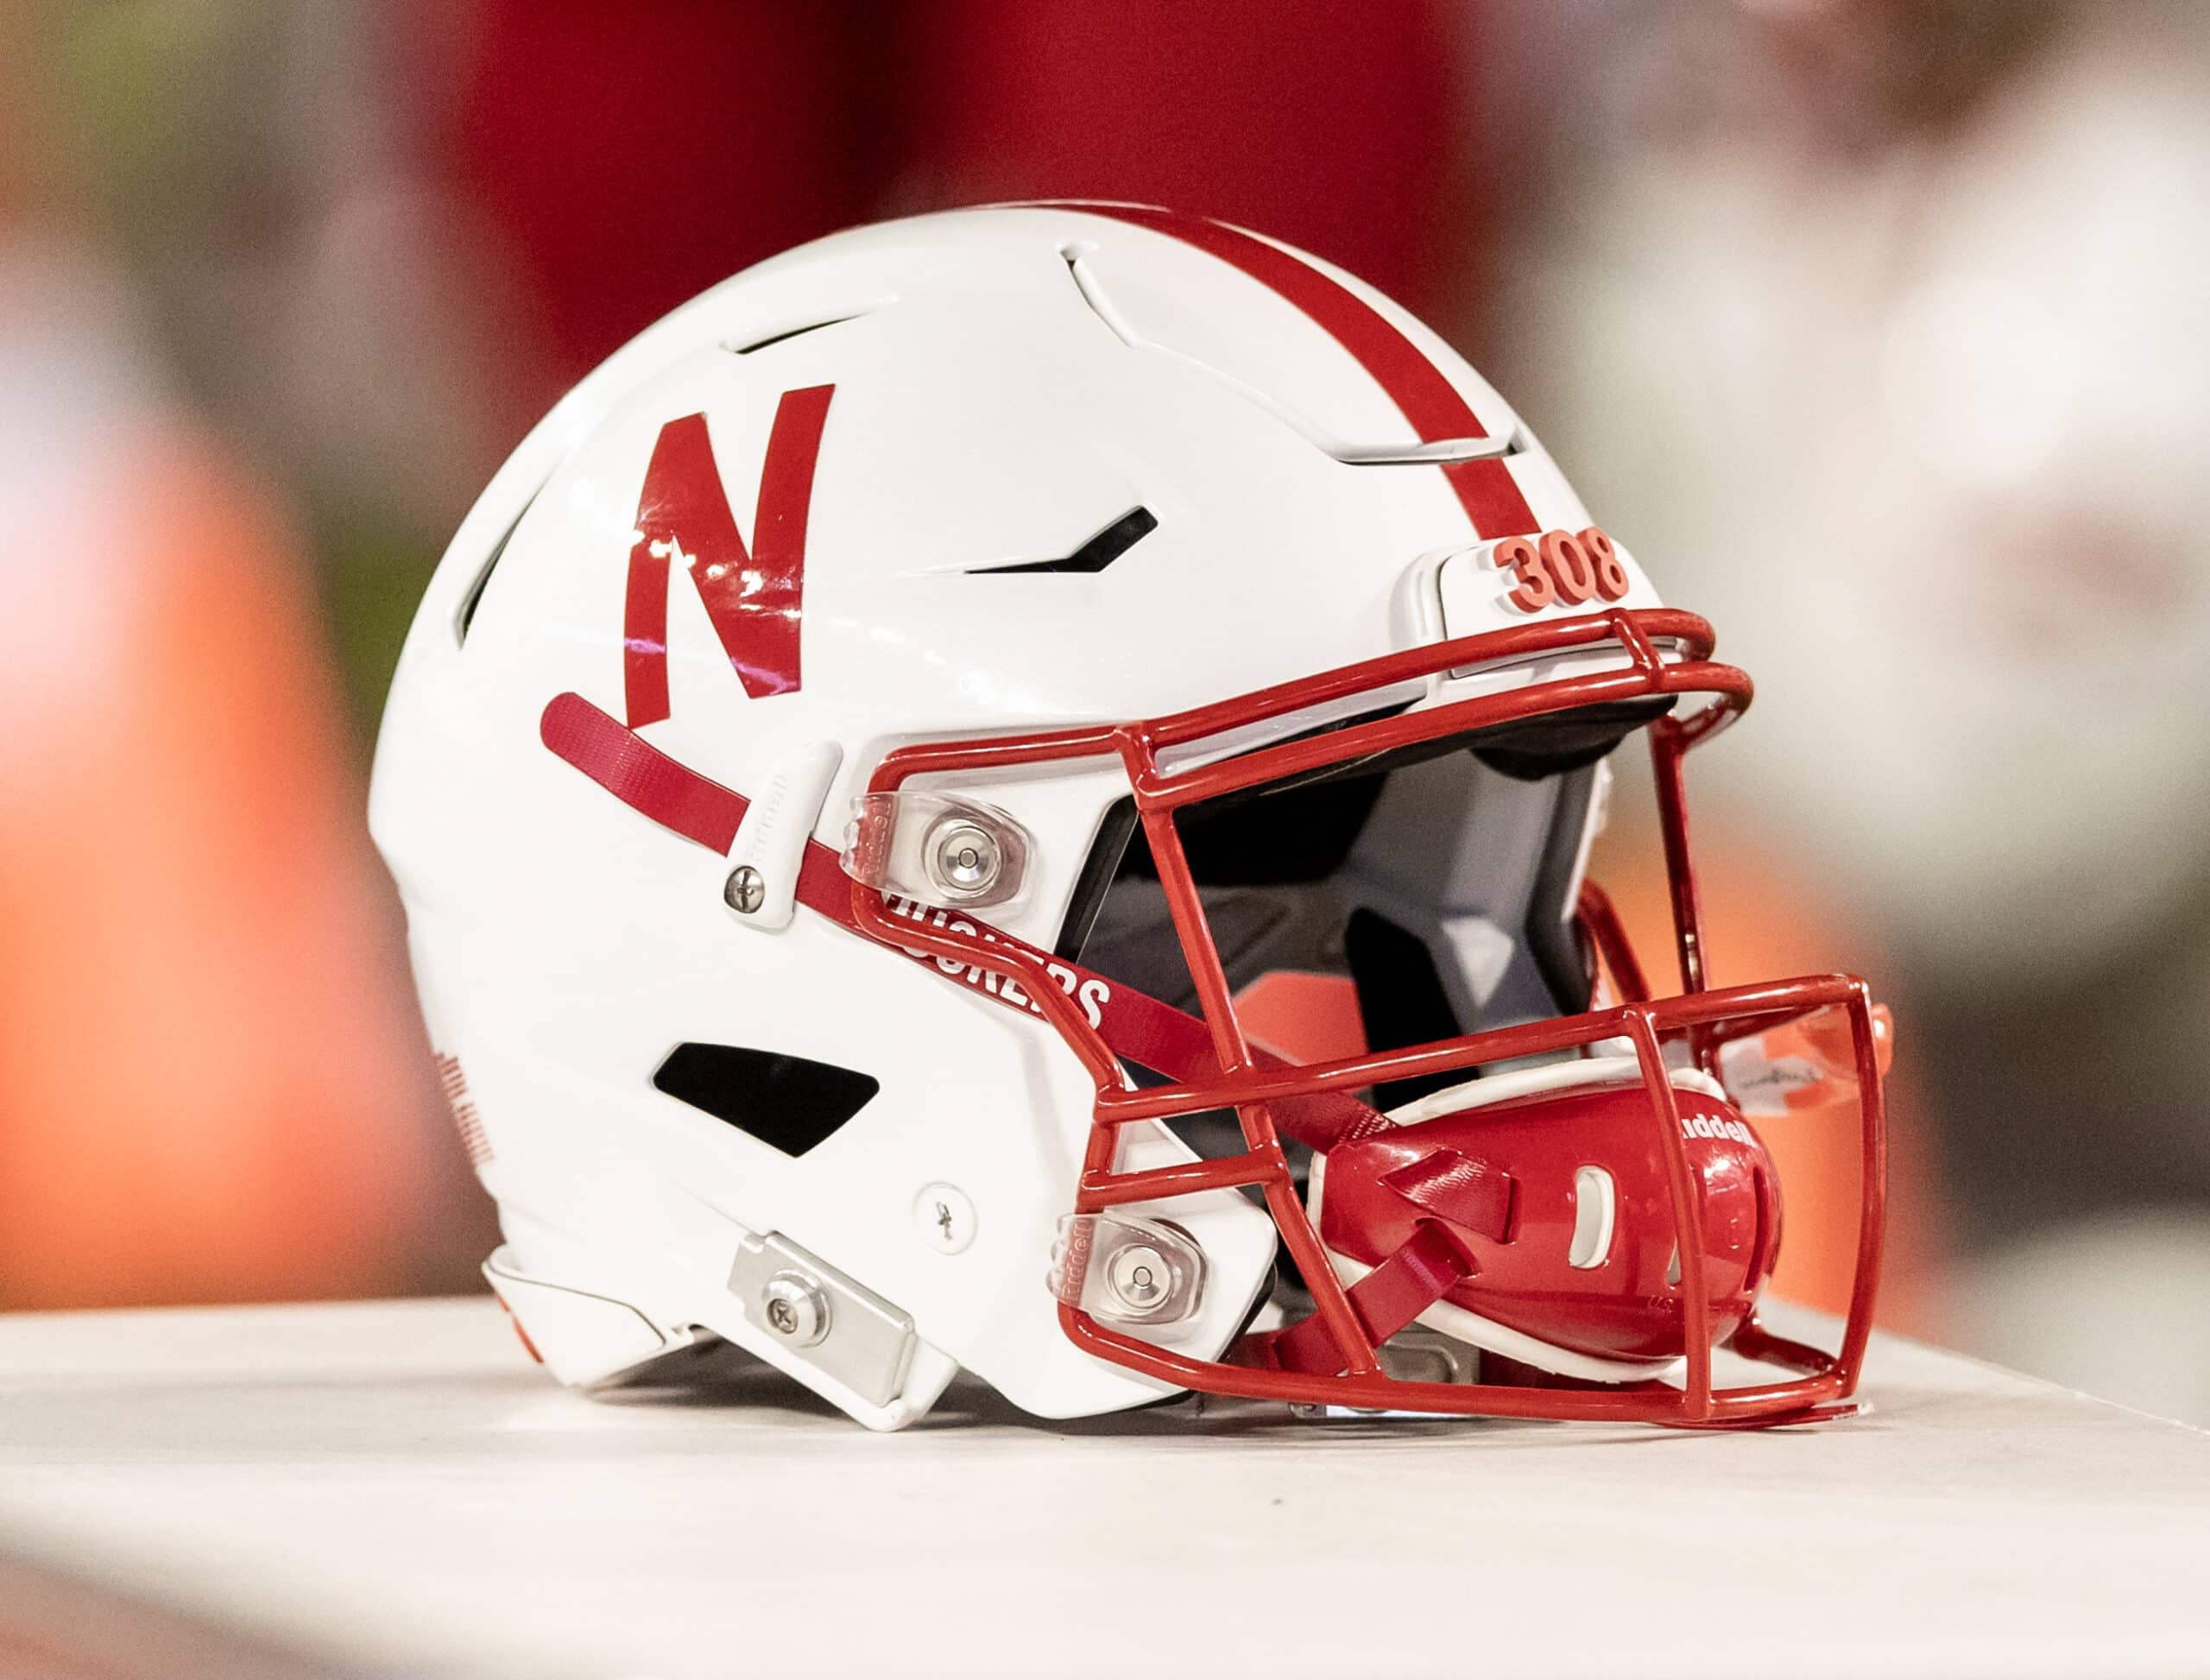 Nebraska football helmet.